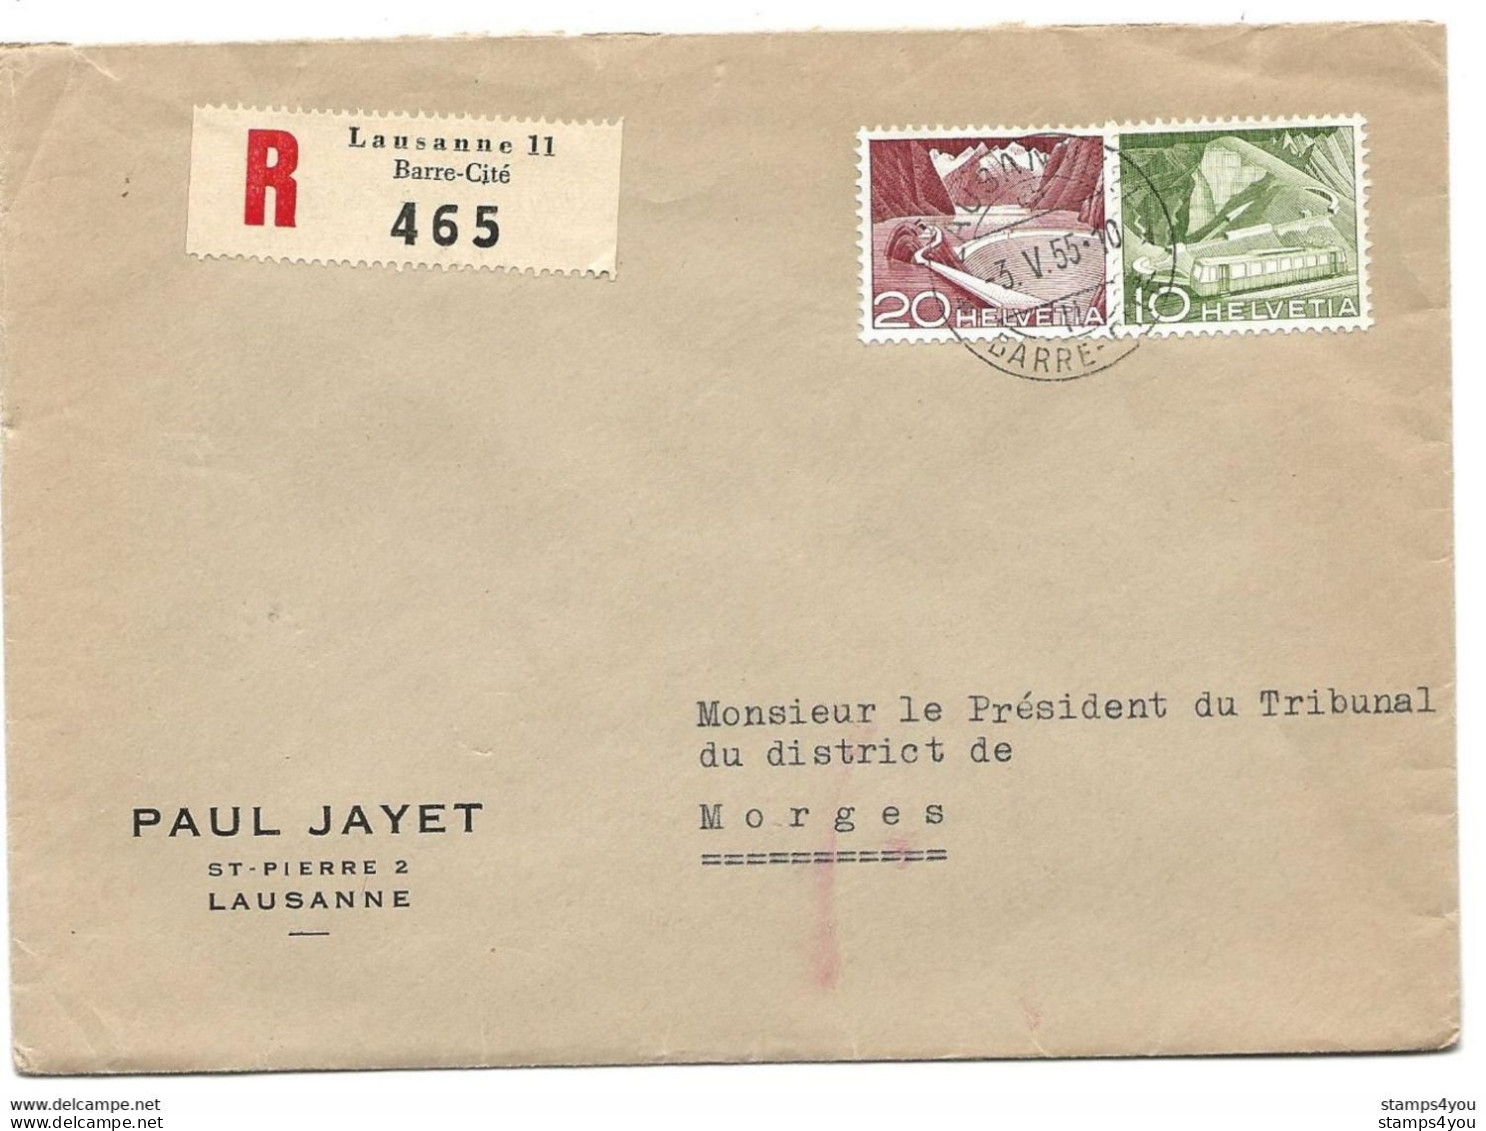 115 - 22 - Enveloppe Recommandée Envoyée De Lausanne  Gare-Cité 1955 - Covers & Documents